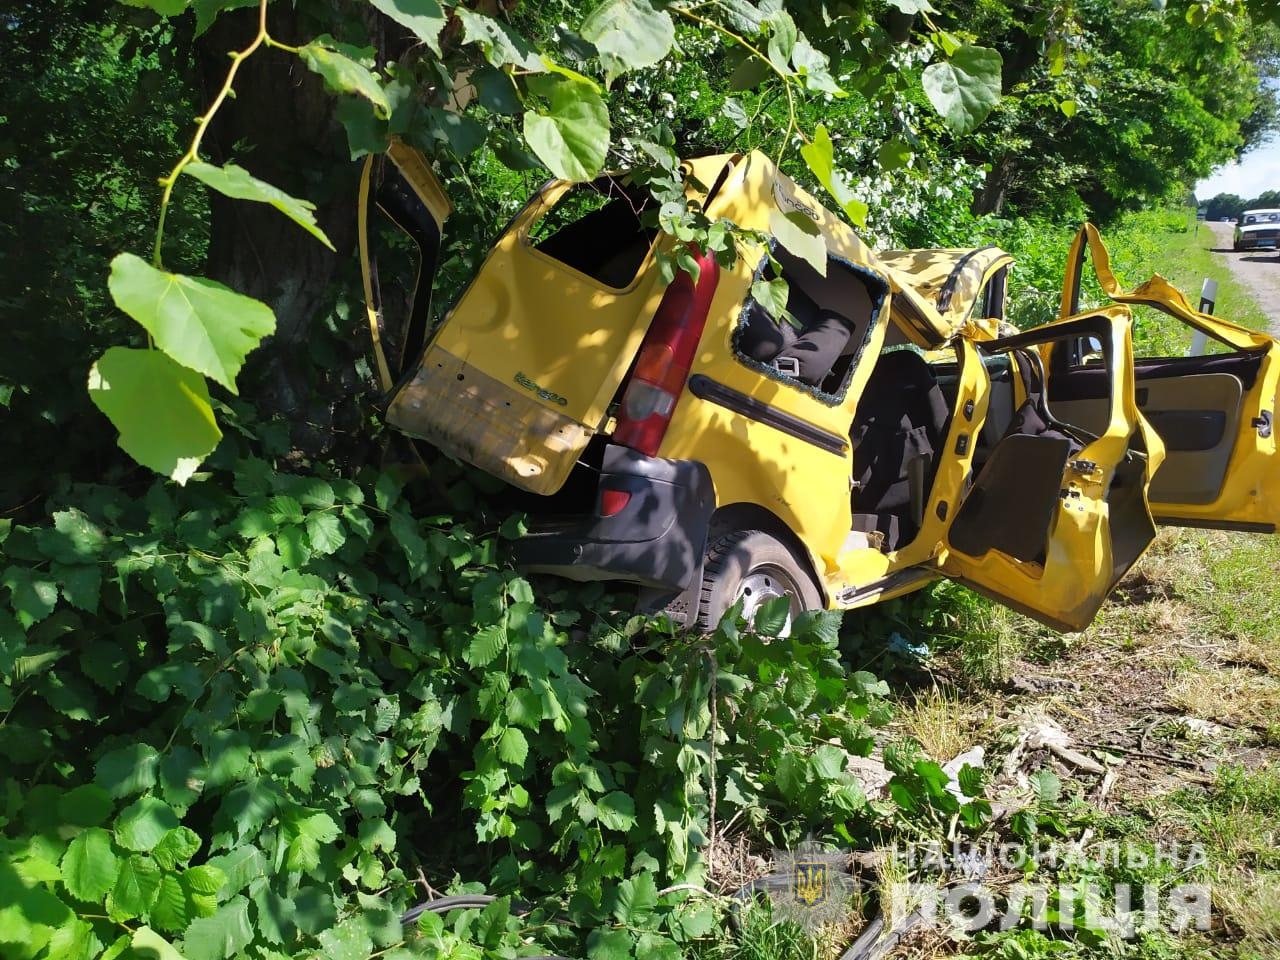 Неподалік Никифорівців водій Renault Kangoo протаранив дерево: четверо людей у реанімації